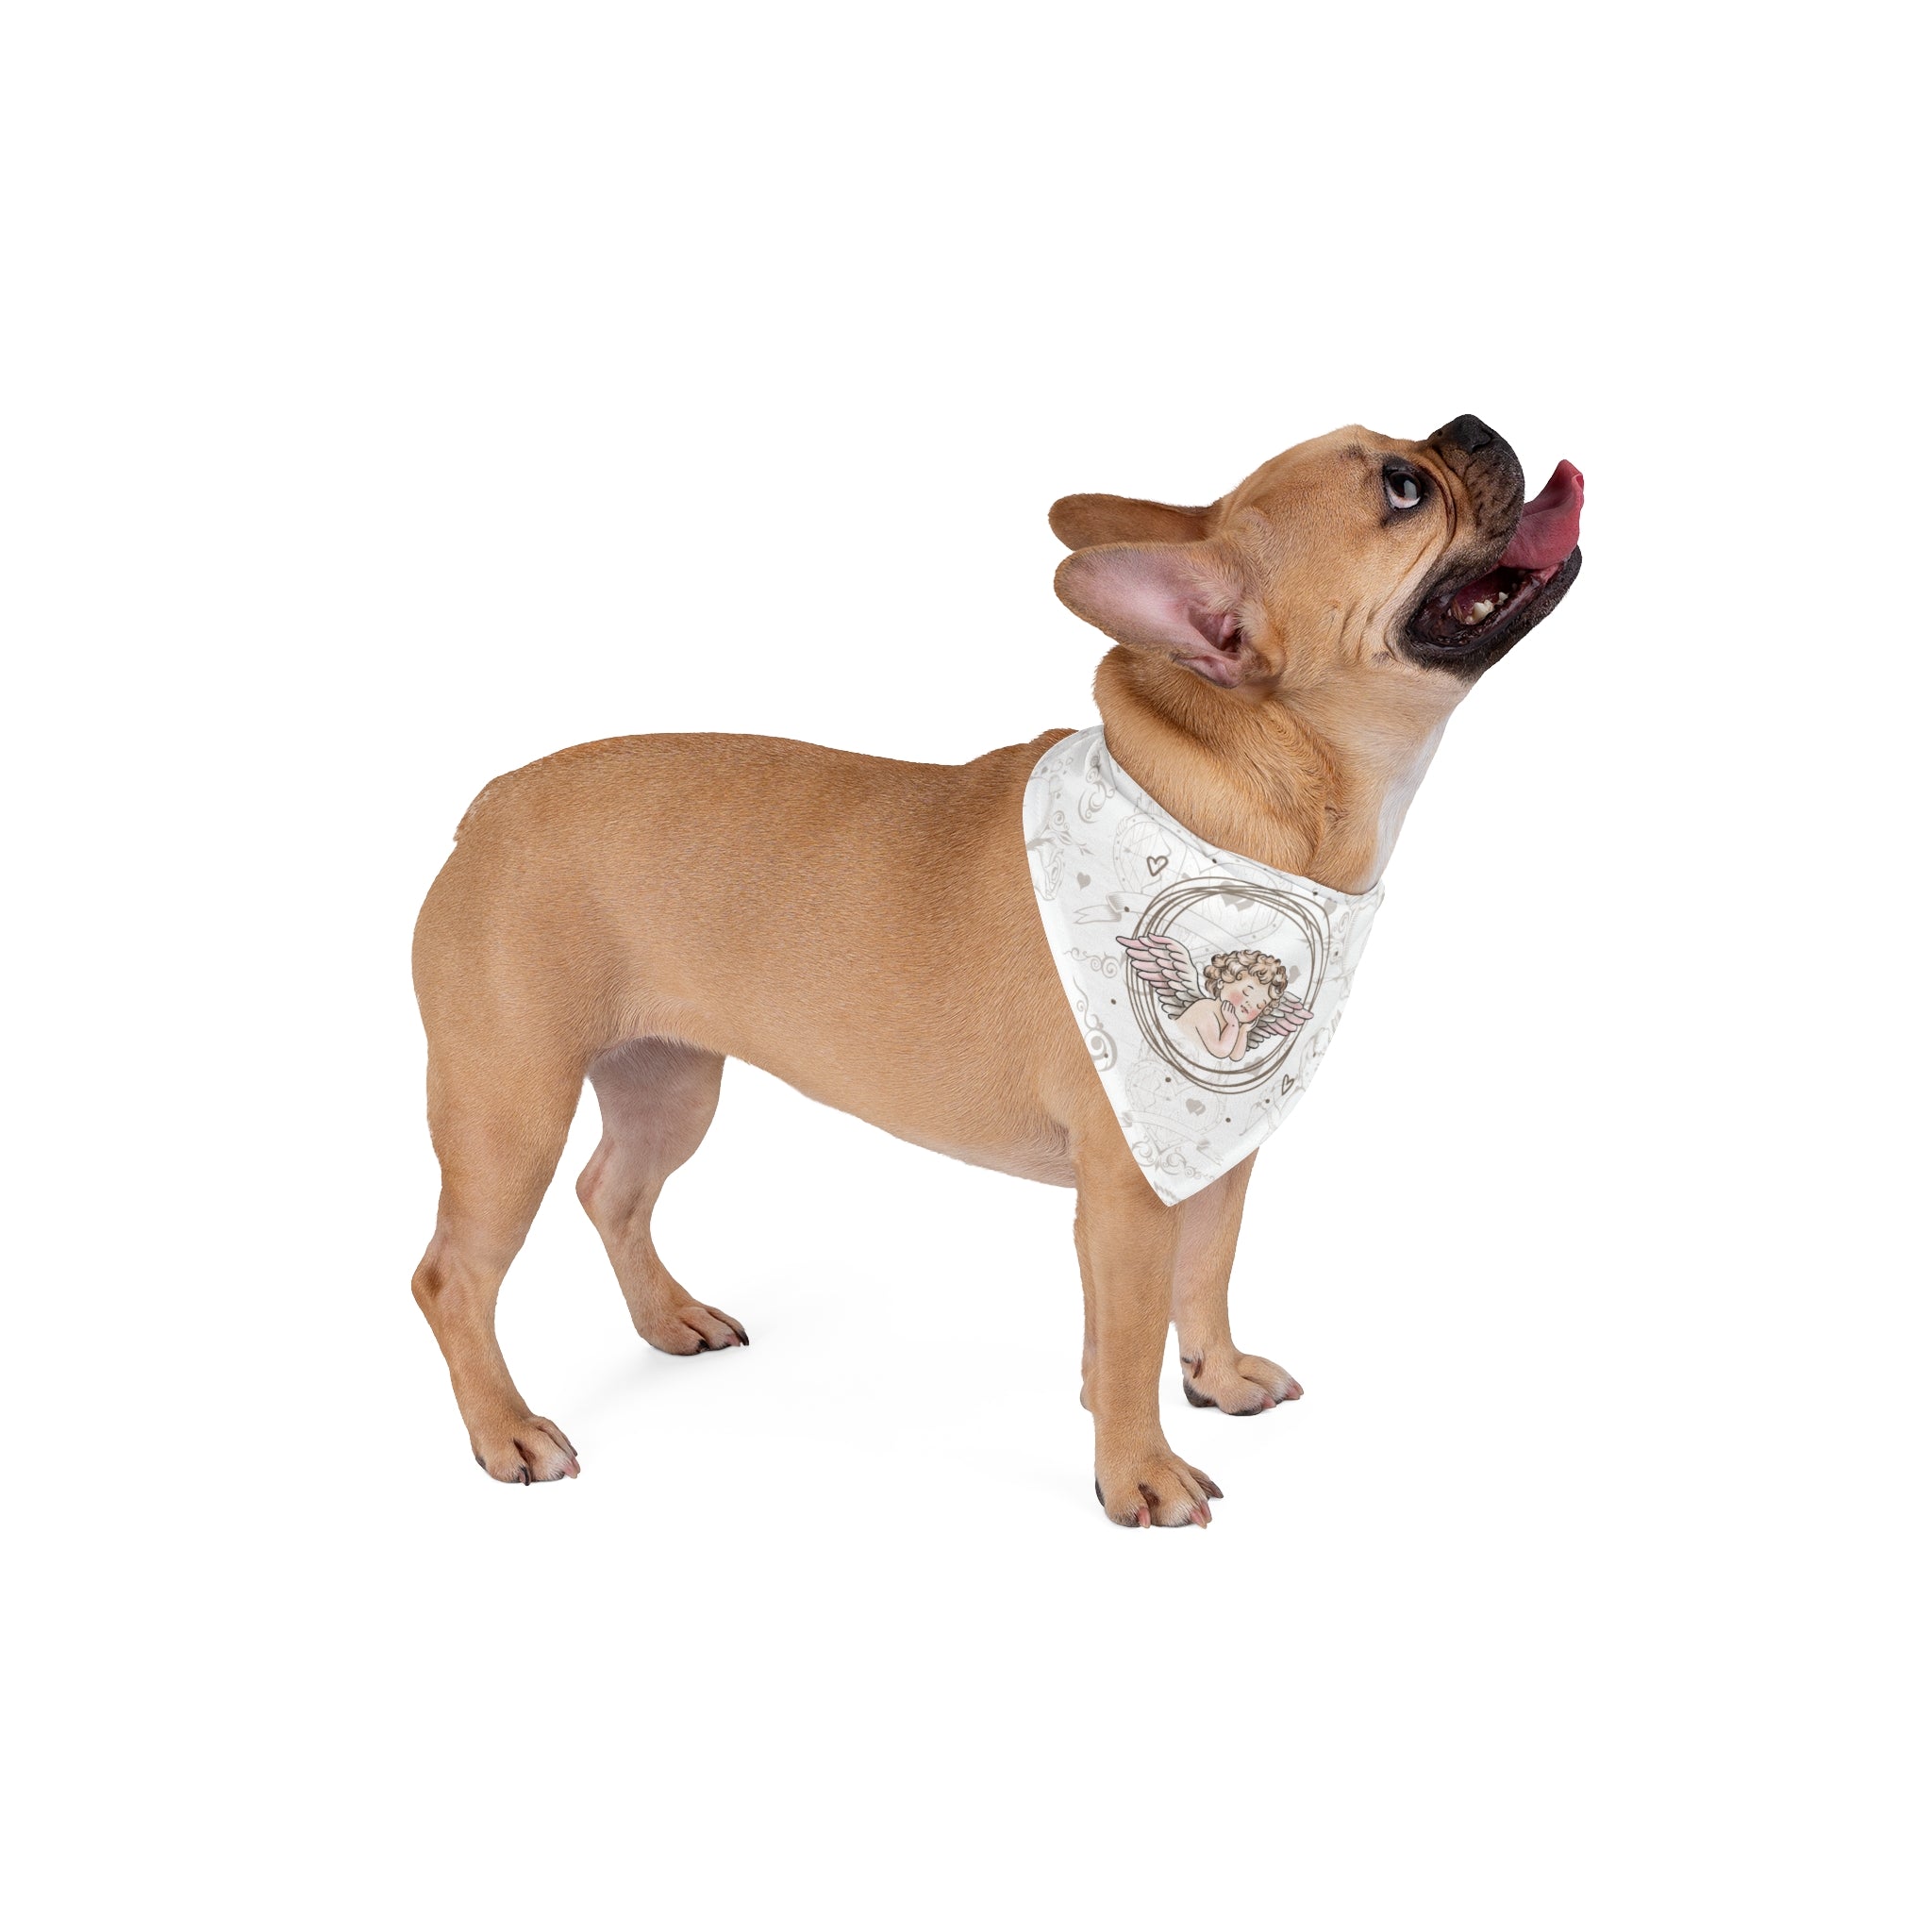 Cherub Angel Dog Bandana - Small and Large Sizes | Versatile Pet Accessory